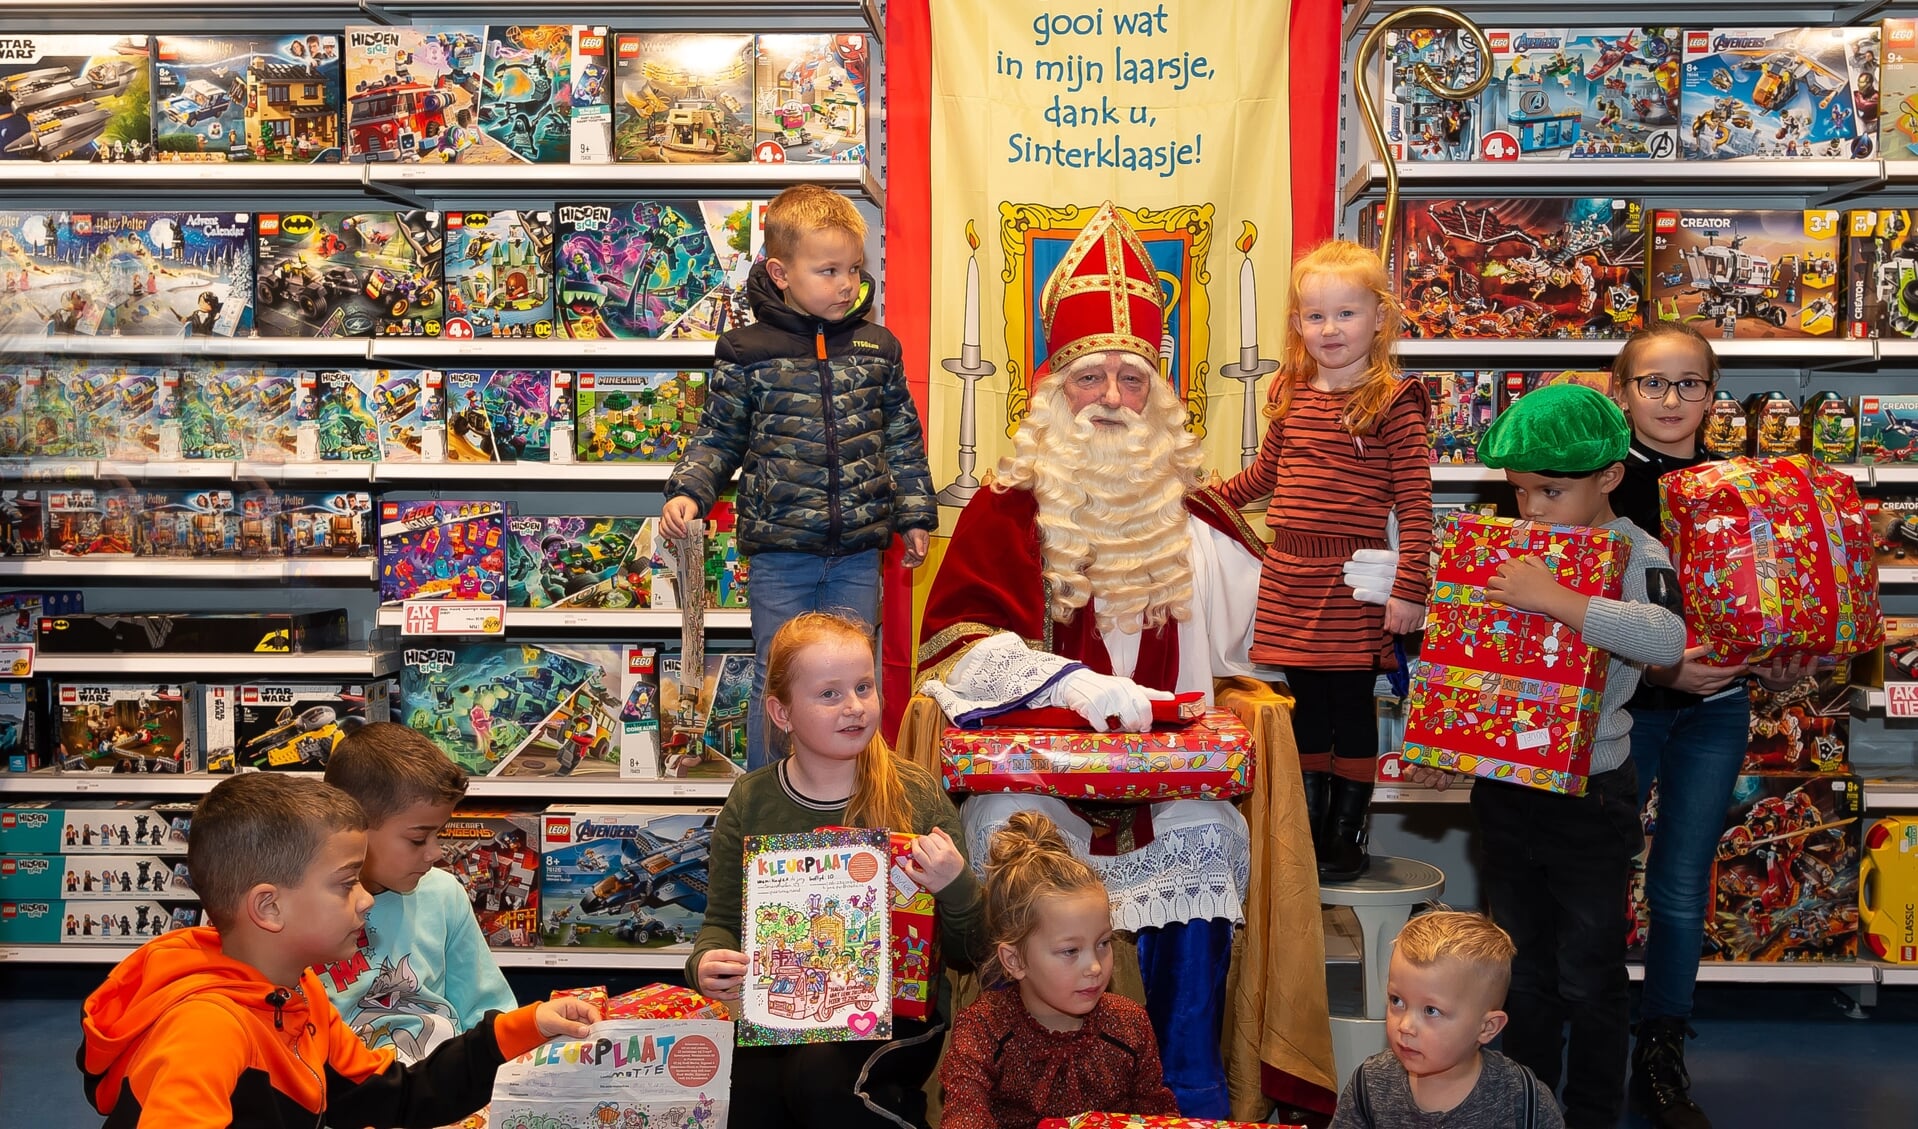 Sinterklaas temidden van alle winnaartjes en hun prijzen.